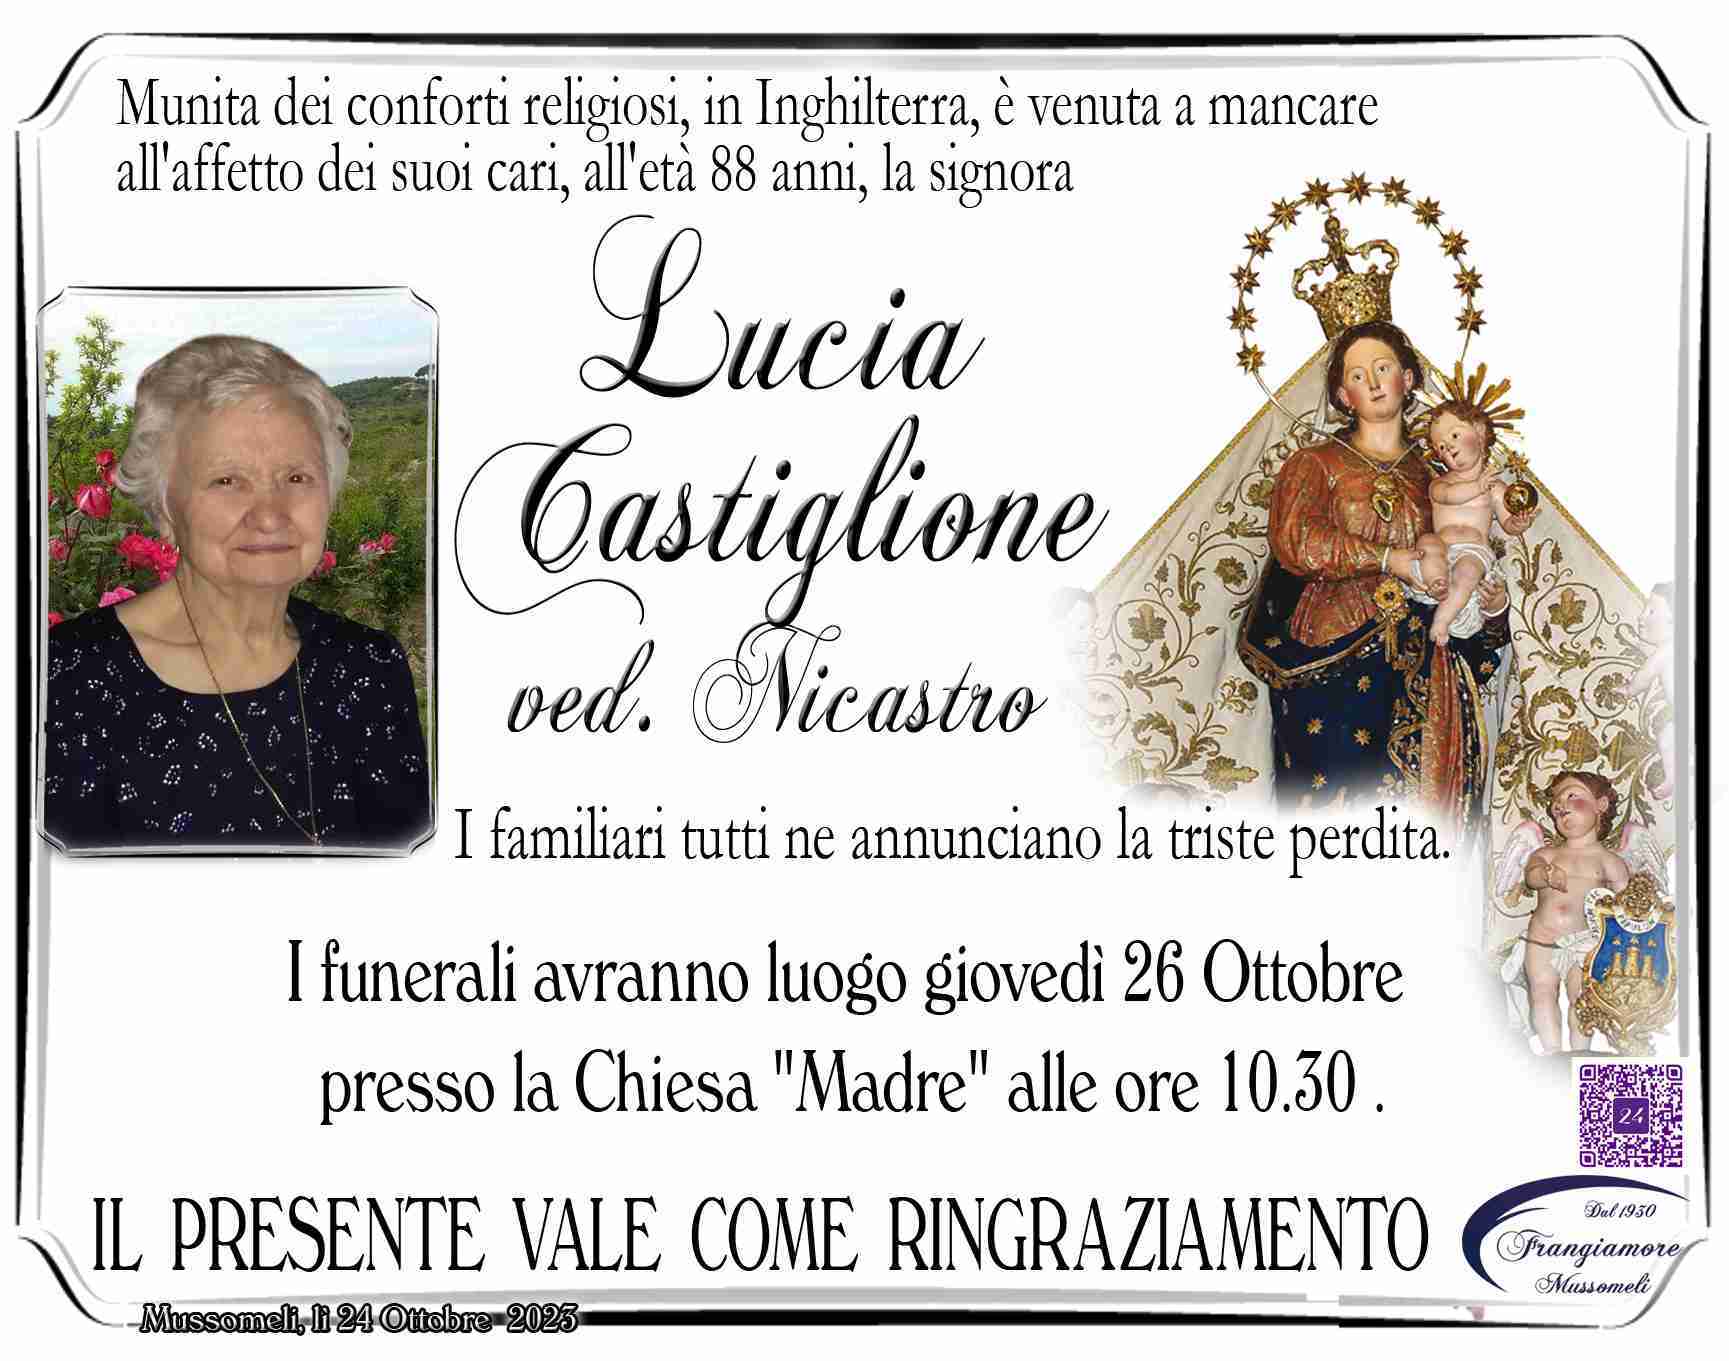 Lucia Castiglione